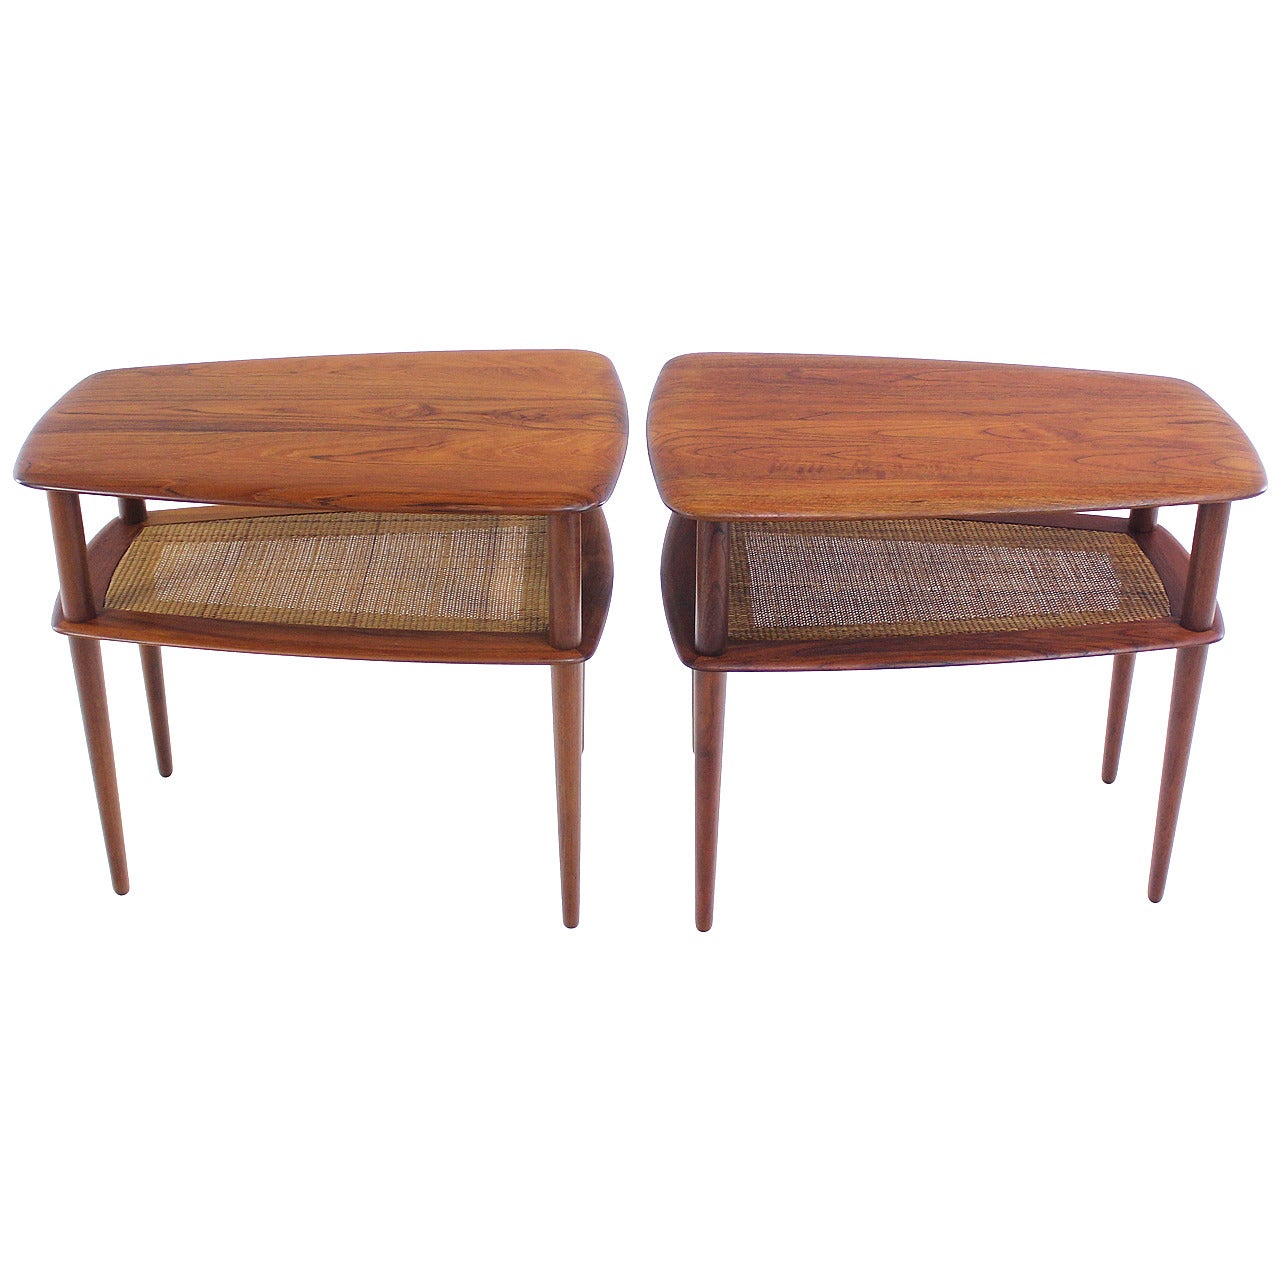 Pair of Danish Modern Solid Teak End or Side Tables Designed by Peter Hvidt For Sale